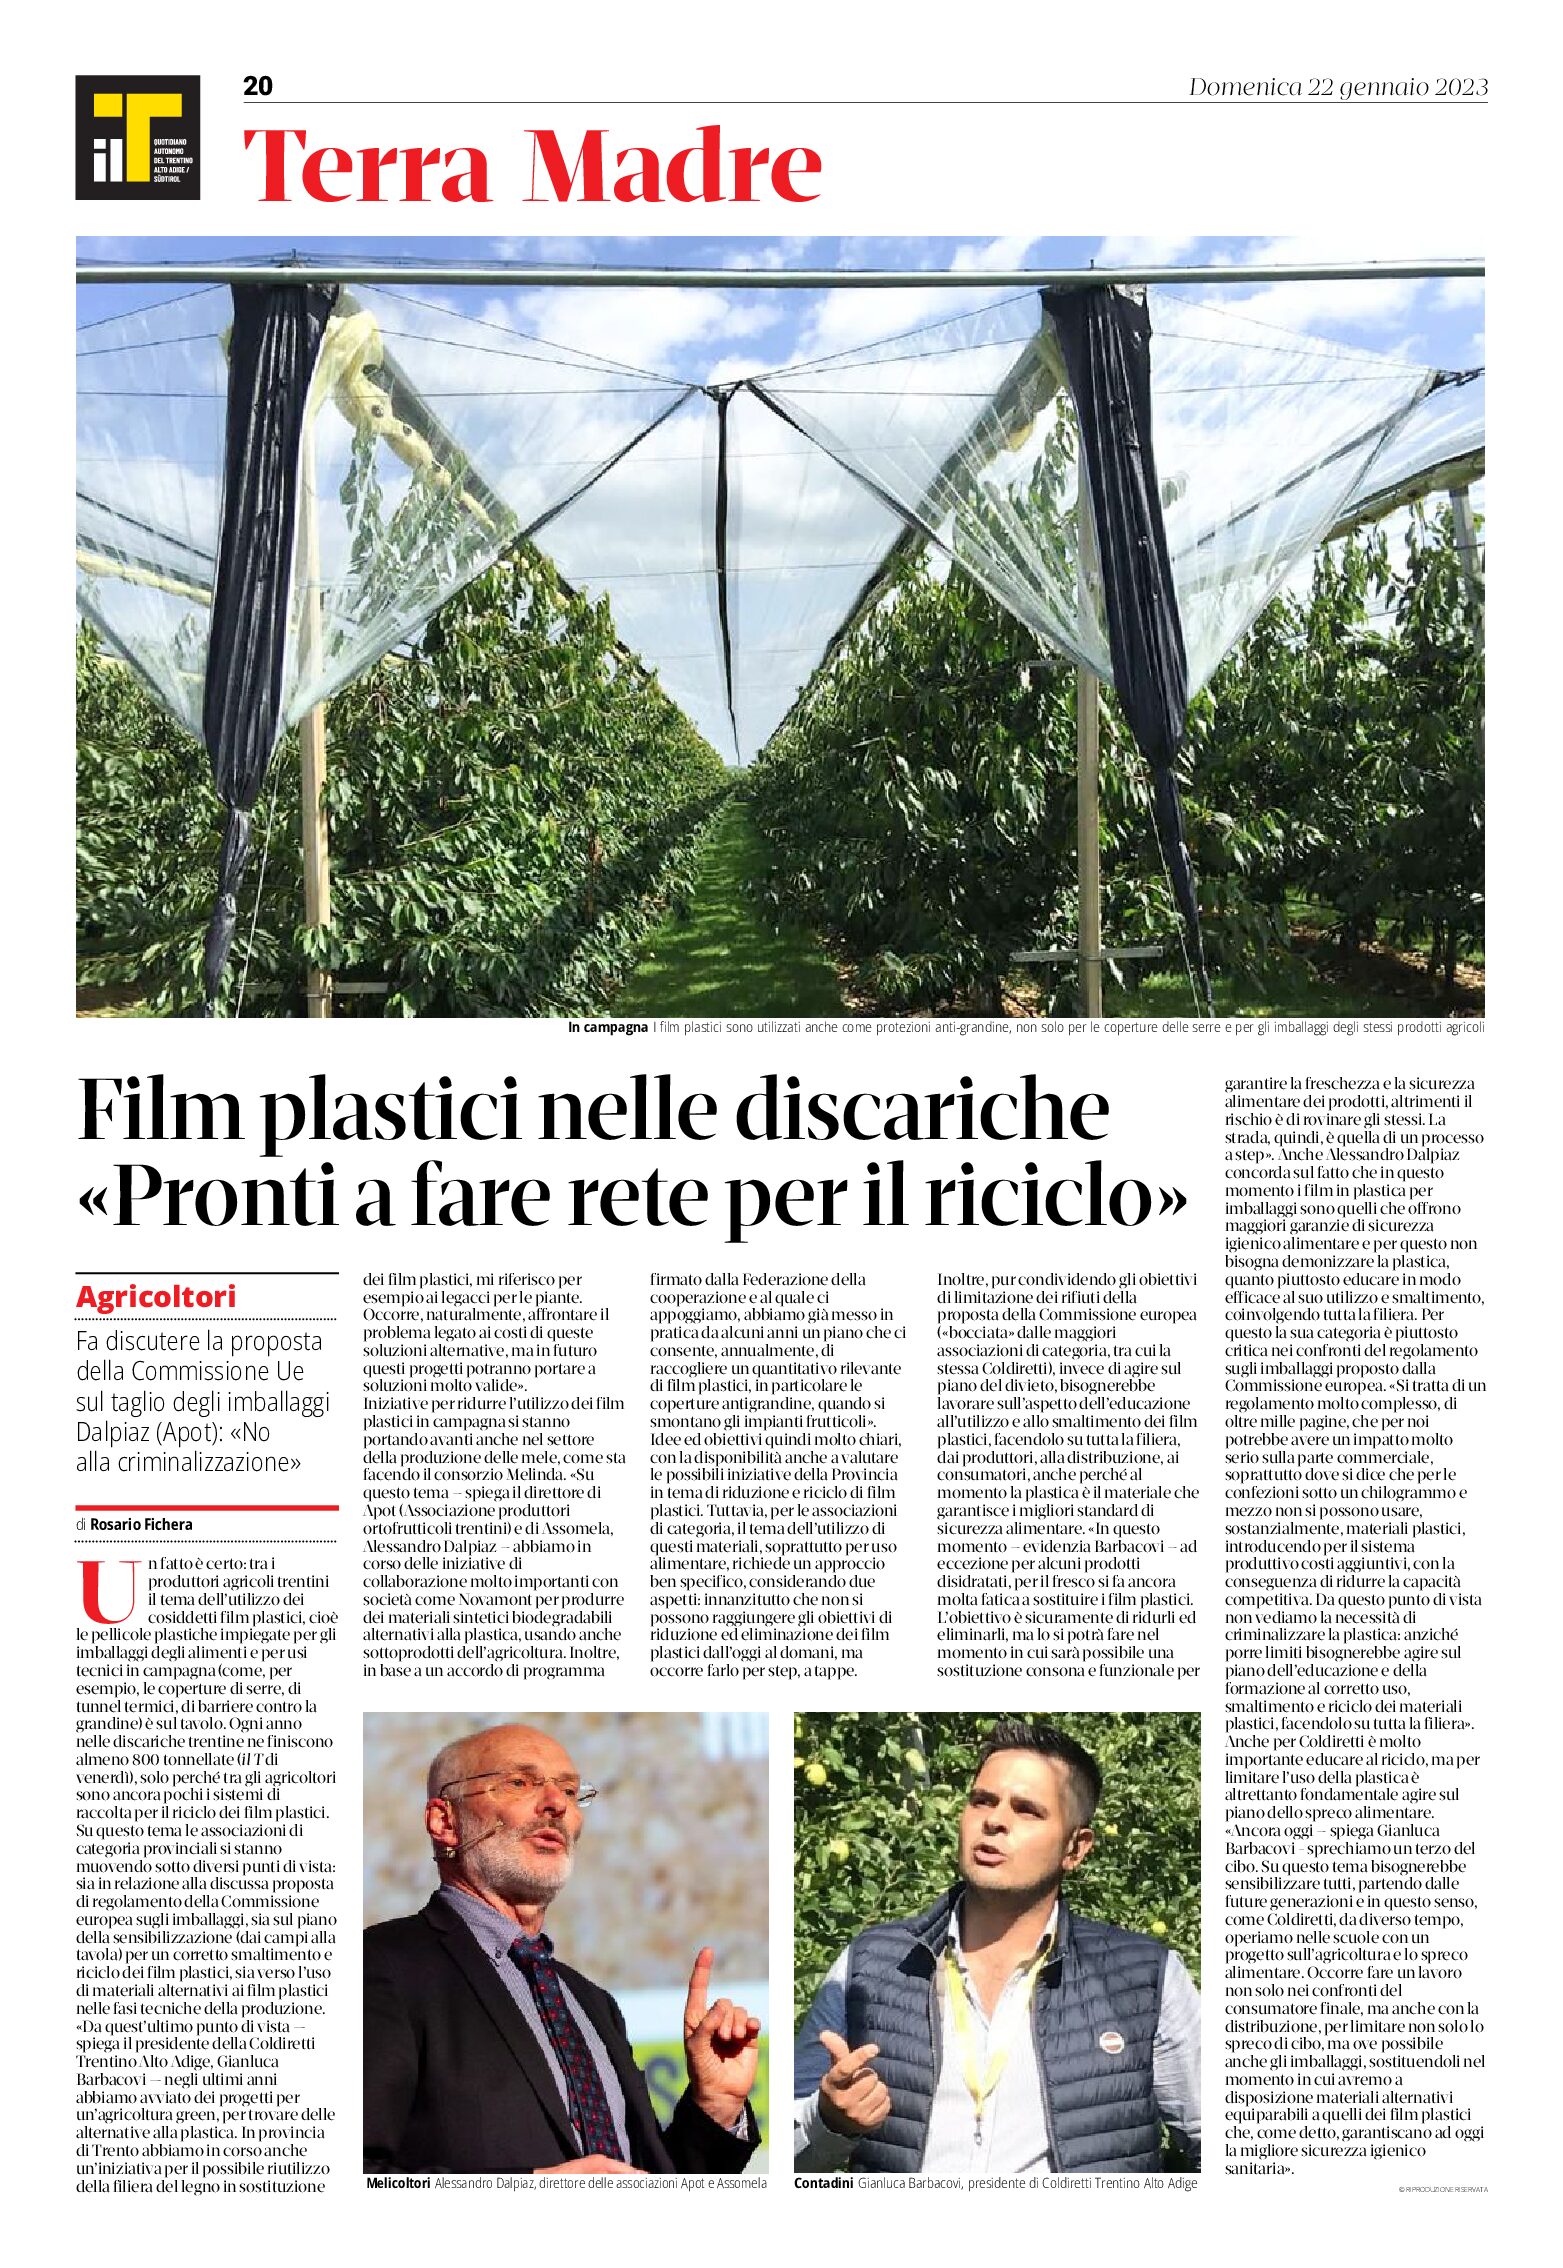 Trentino: film plastici nelle discariche “pronti a fare rete per il riciclo”